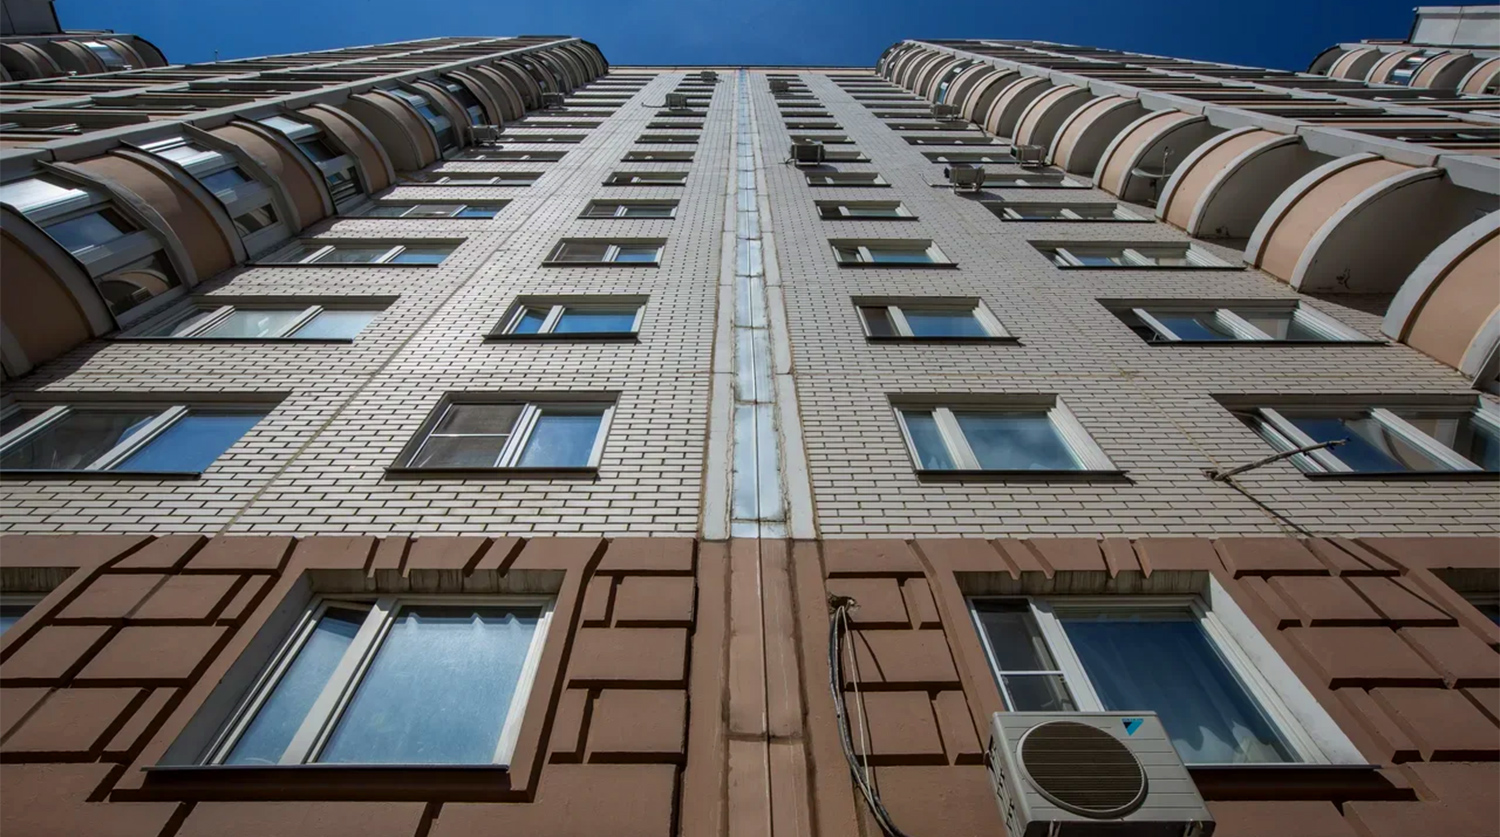 Приватизация квартиры в 2024 московская область